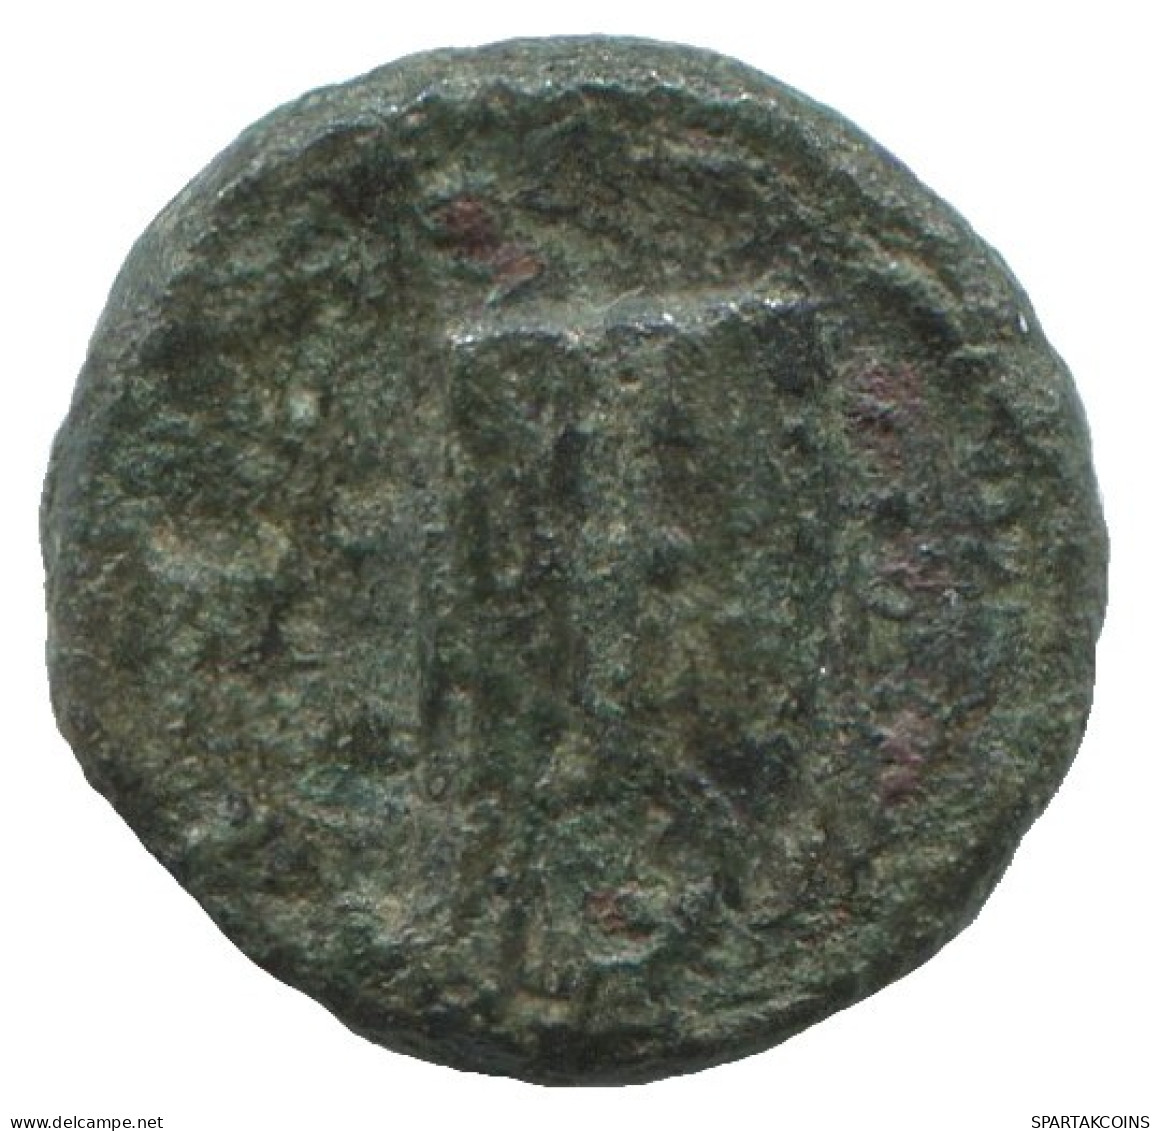 Ancient Antike Authentische Original GRIECHISCHE Münze 1.2g/10mm #SAV1221.11.D.A - Greek